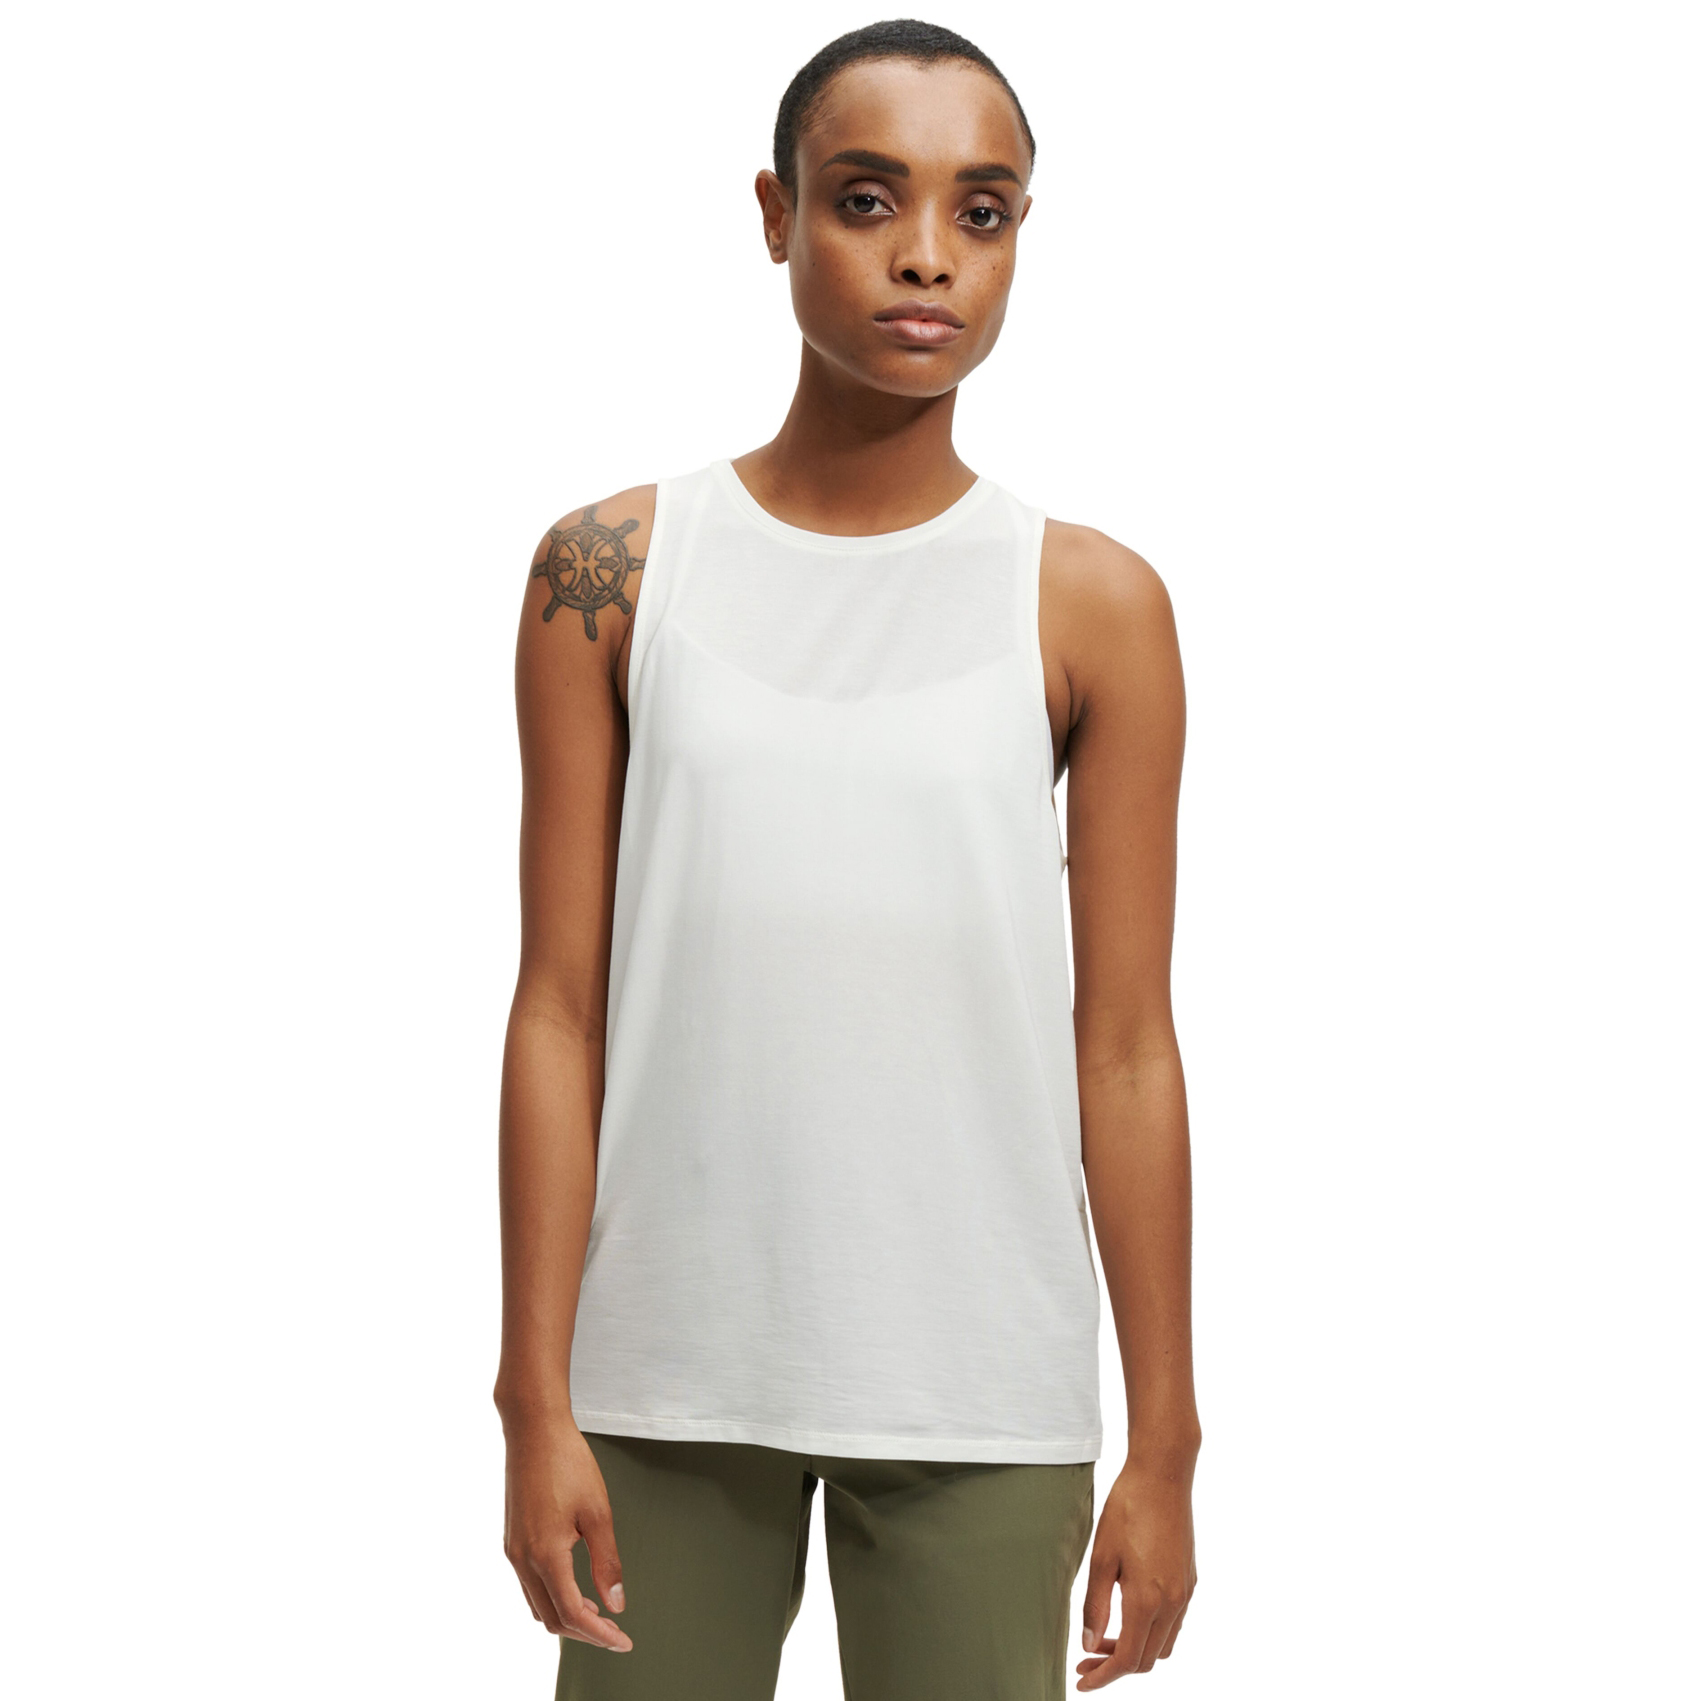 Produktbild von On Active Tank Damen Laufshirt - Weiß